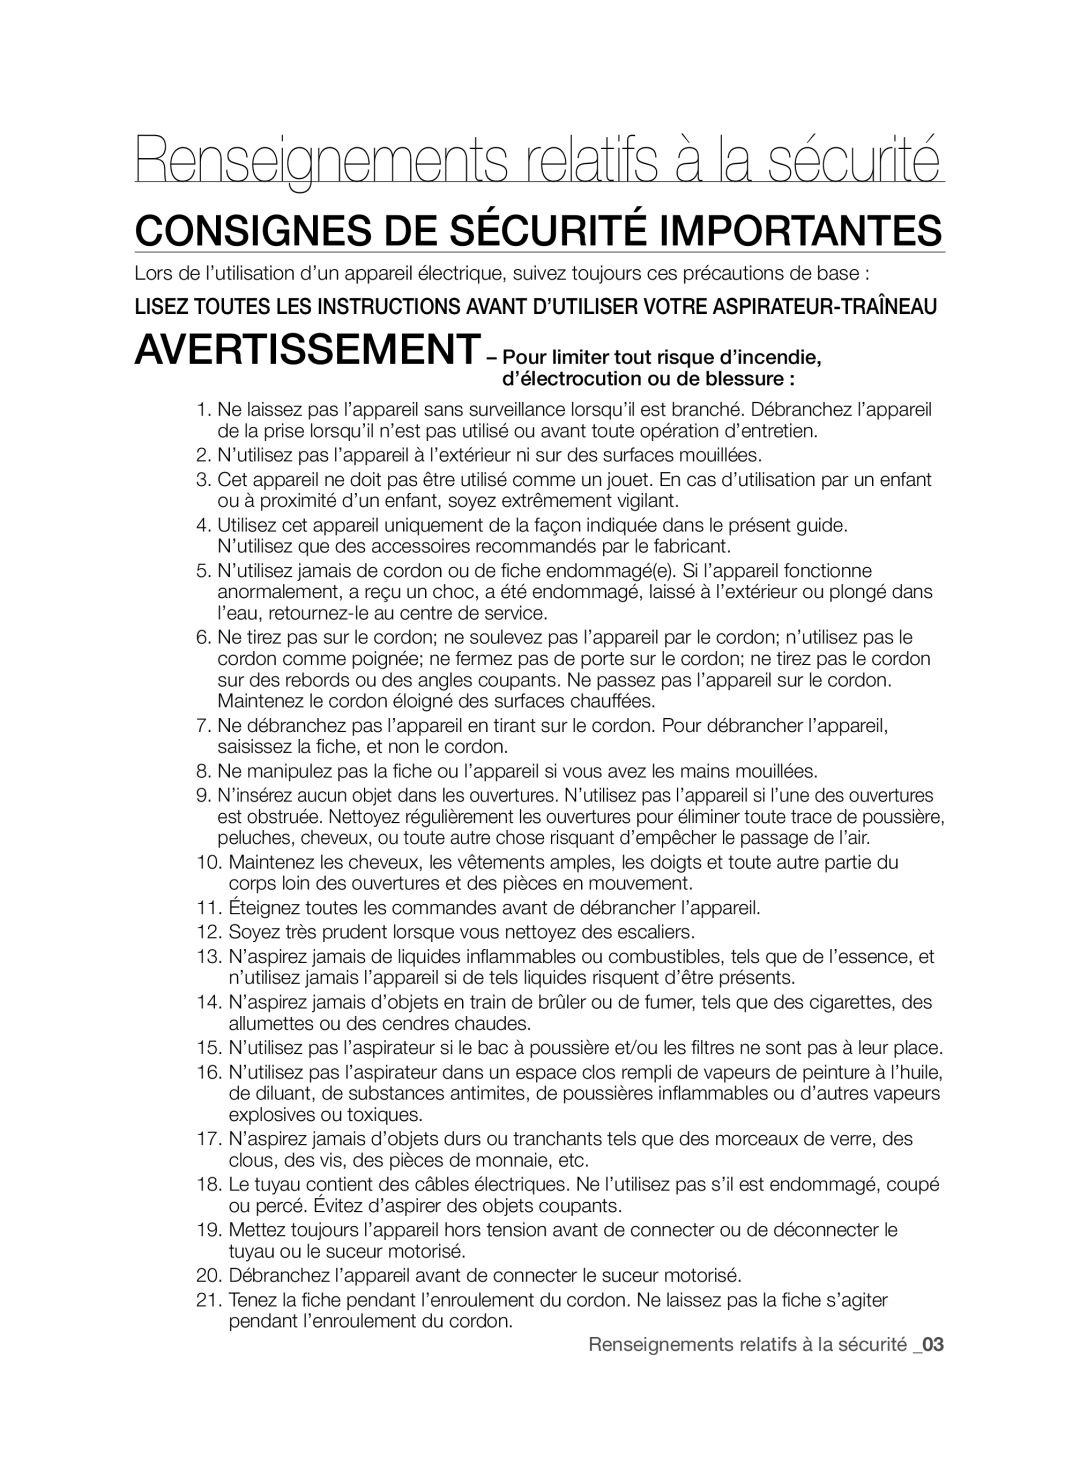 Samsung VCC96P0H1G user manual Consignes De Sécurité Importantes, Renseignements relatifs à la sécurité _03 